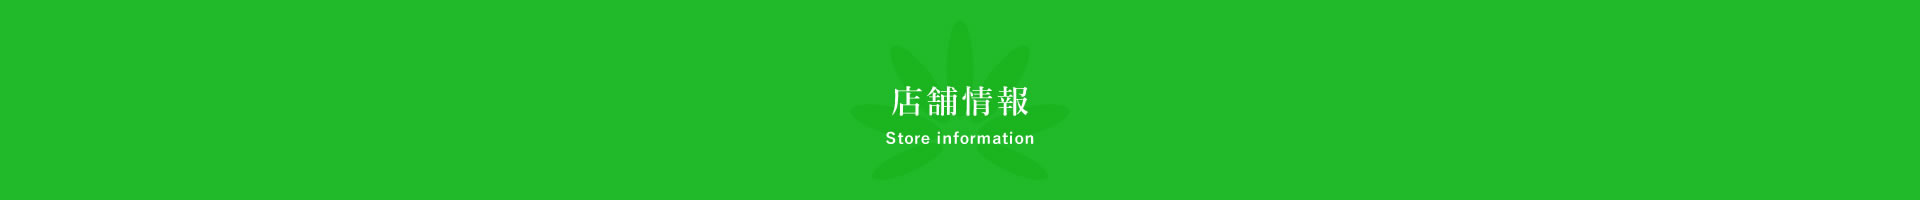 店舗情報 Store information